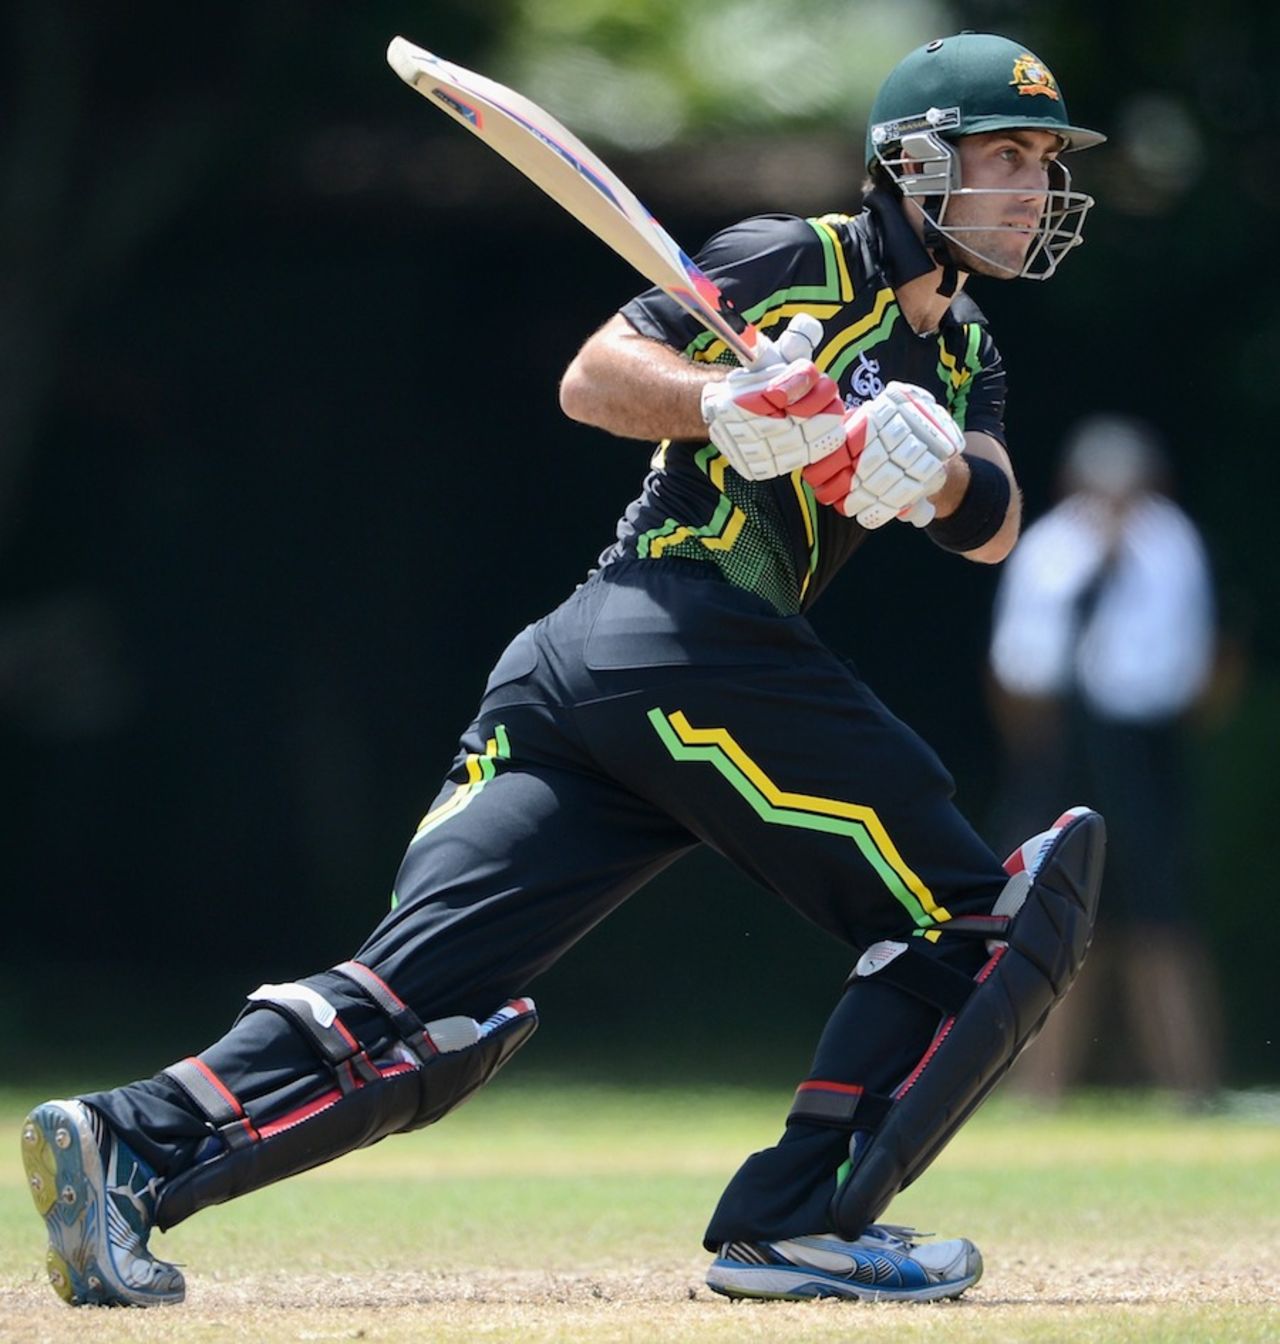 Glenn Maxwell scored 24 off 27 balls, Australia v New Zealand, World Twenty20 2012 warm-up, Colombo, September 15, 2012